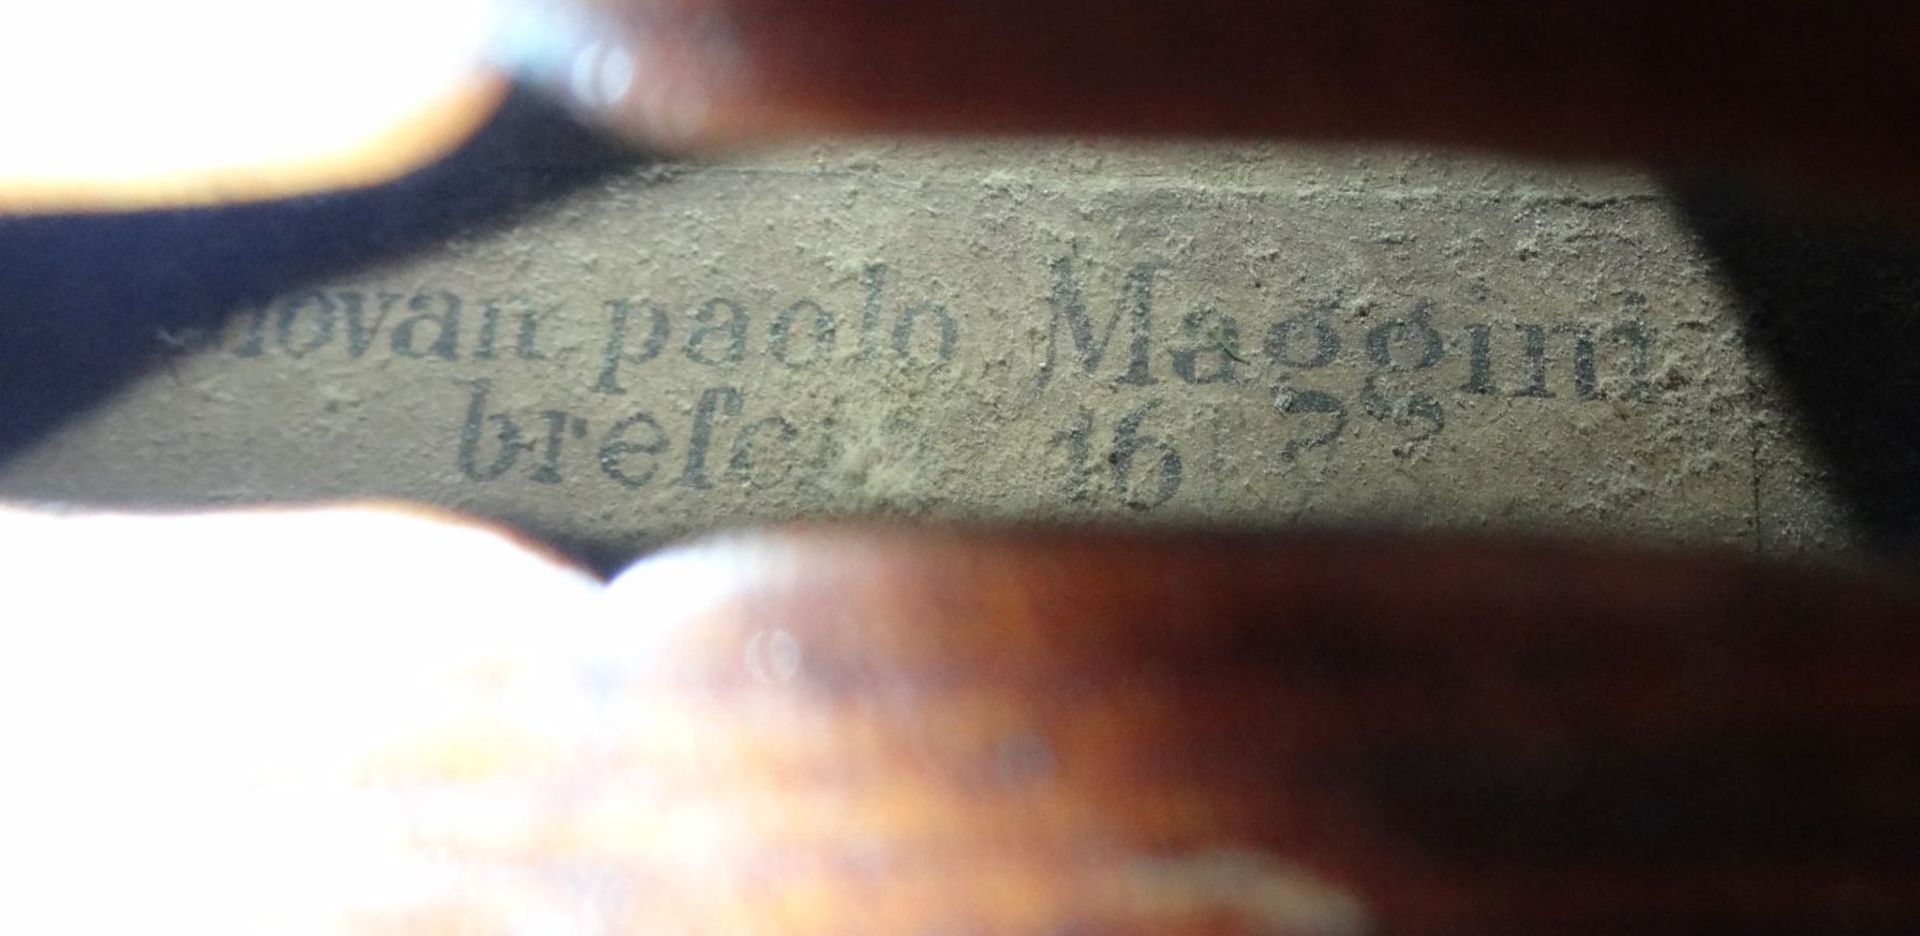 alte Geige im Koffer, innen Etikett "Ciovan Paolo Meggine", 19/20 Jhd?, L-62 cm, gut erhalten - Bild 9 aus 10